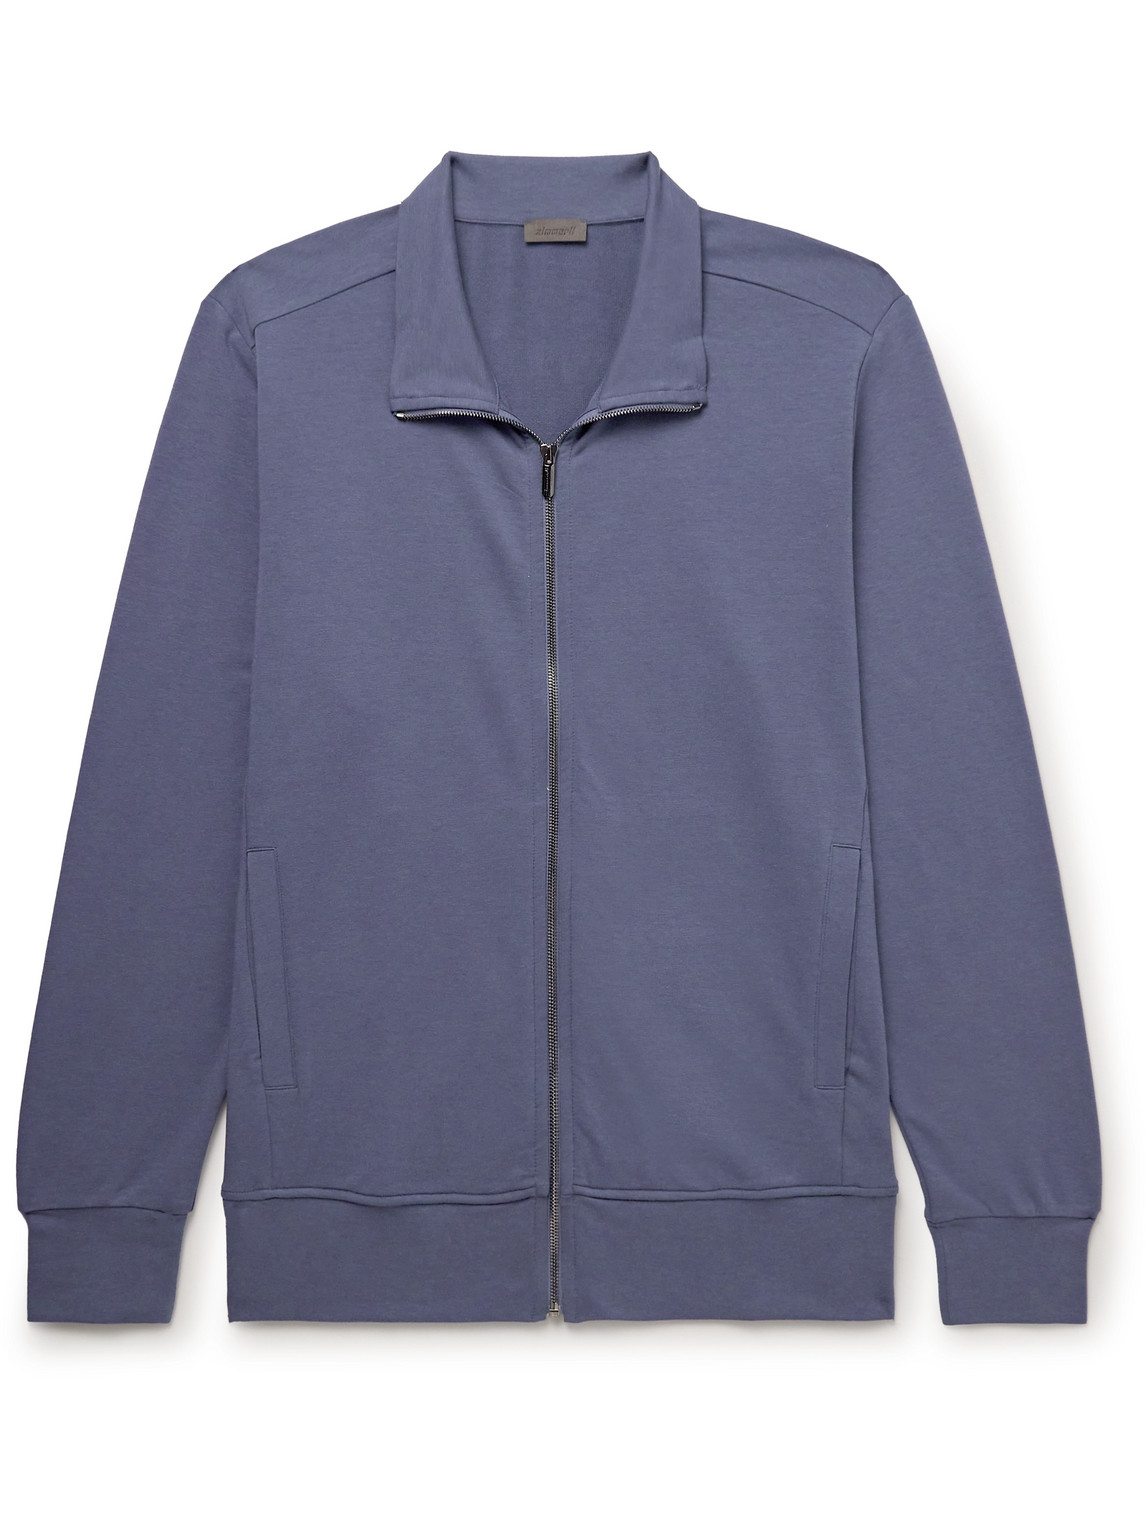 Zimmerli - Stretch Modal and Cotton-Blend Jersey Track Jacket - Men - Blue - M von Zimmerli